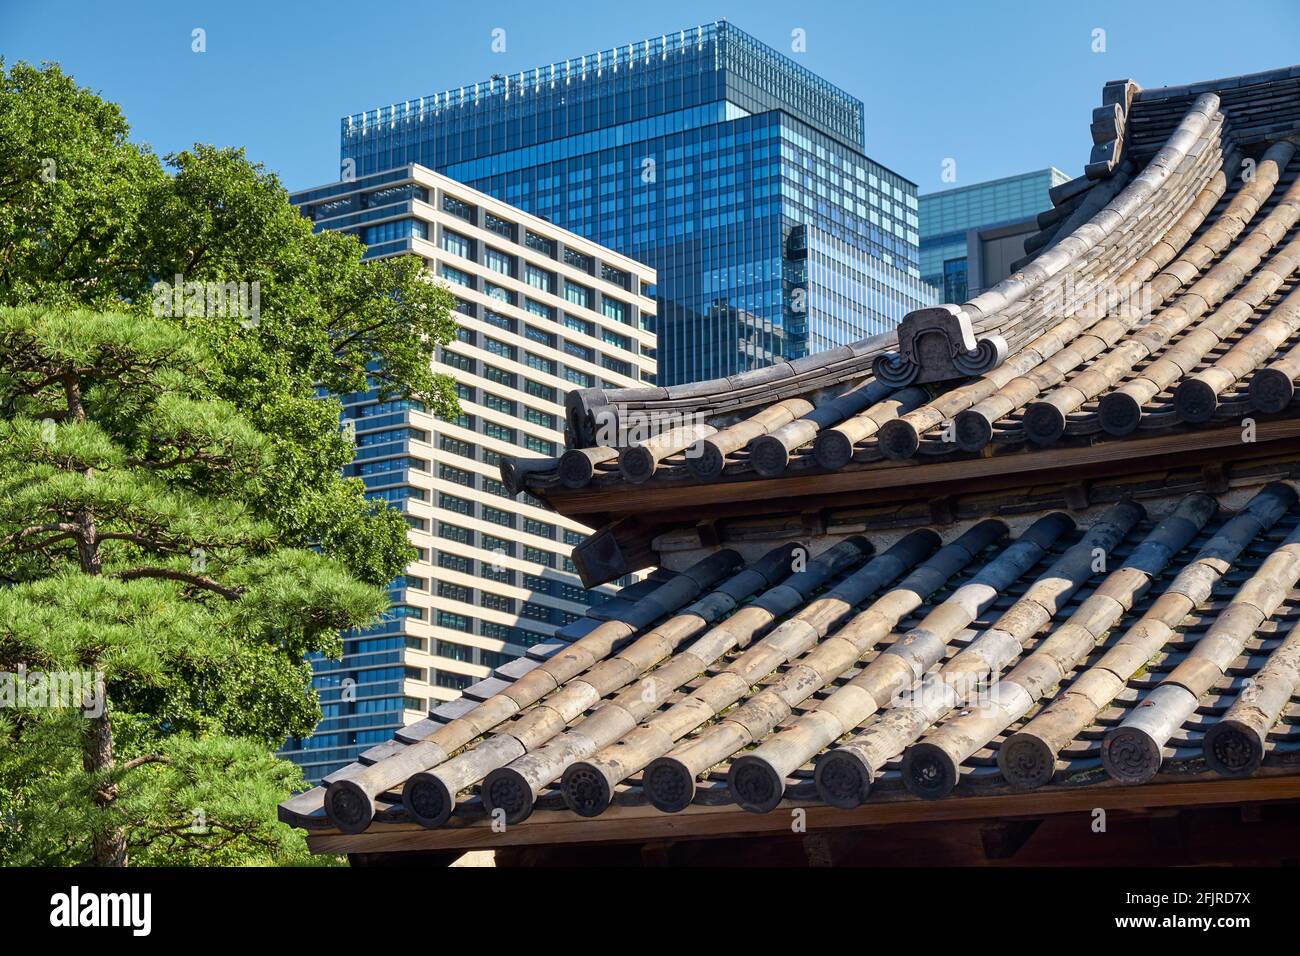 La vista del vecchio tetto curvo tradizionale dell'edificio del palazzo Imperiale e dei moderni grattacieli del centro commerciale nel quartiere Chiyoda di Tokyo. Giappone Foto Stock